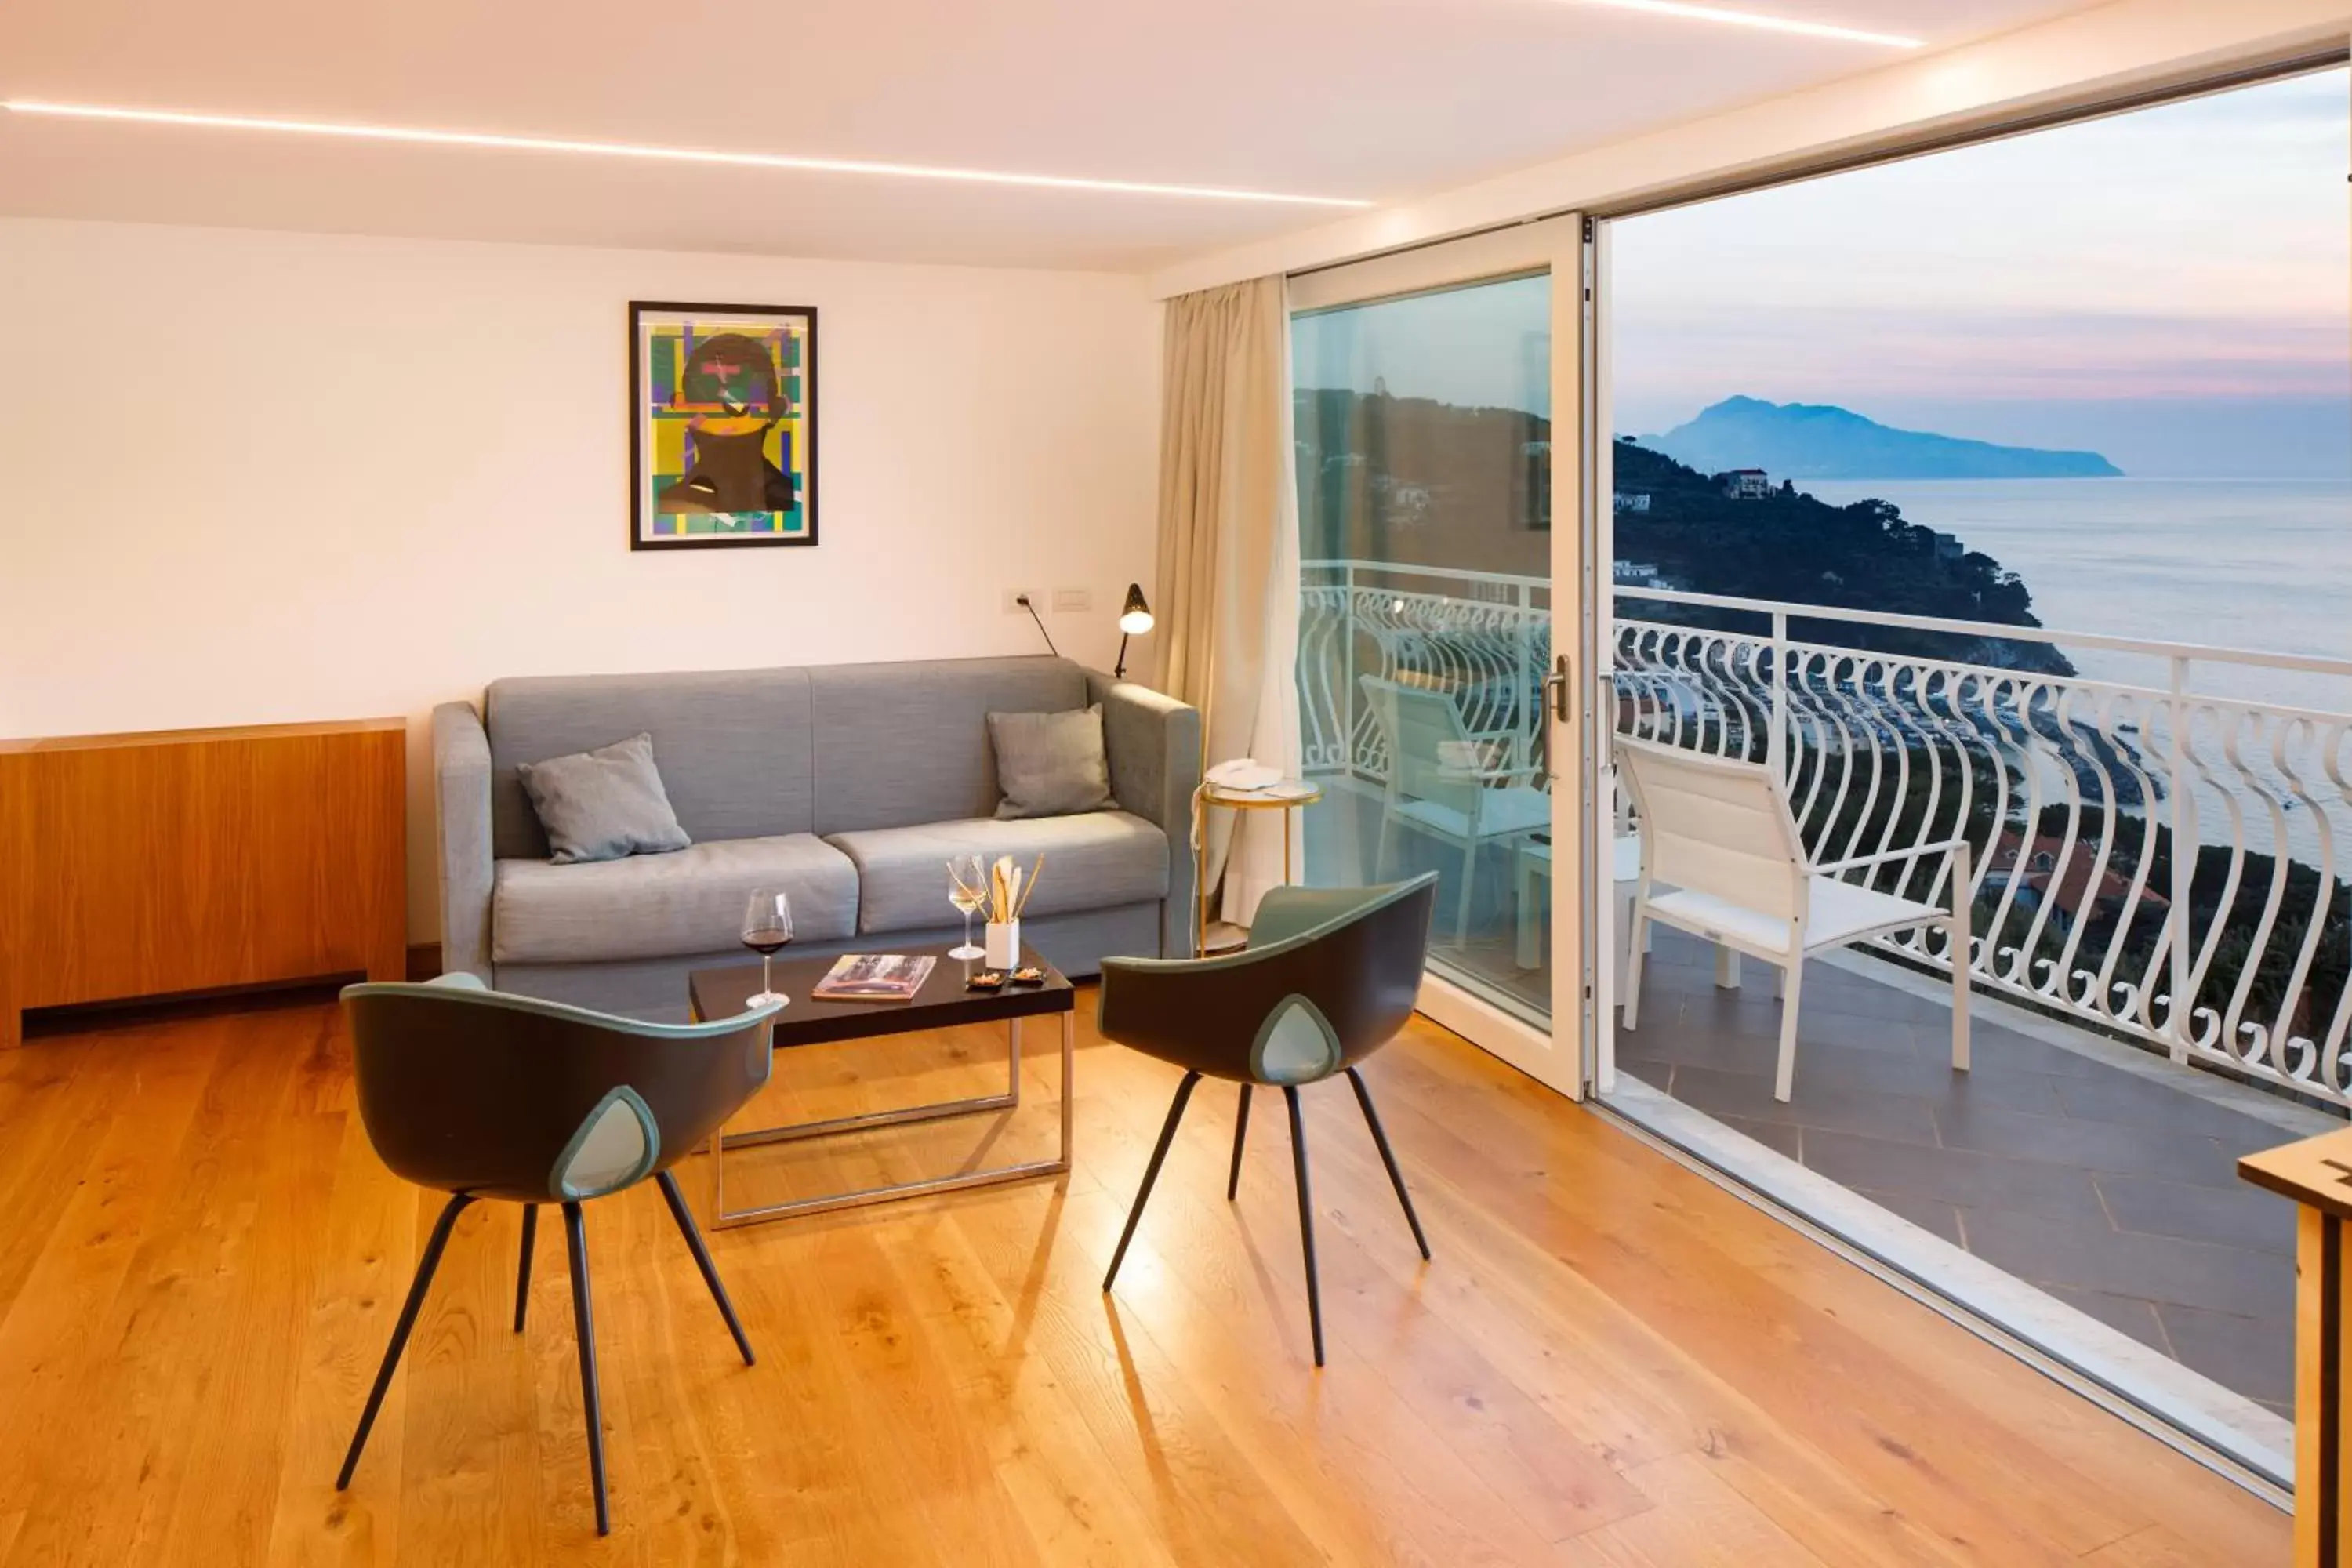 Balcony/Terrace, Seating Area in Villa Fiorella Art Hotel